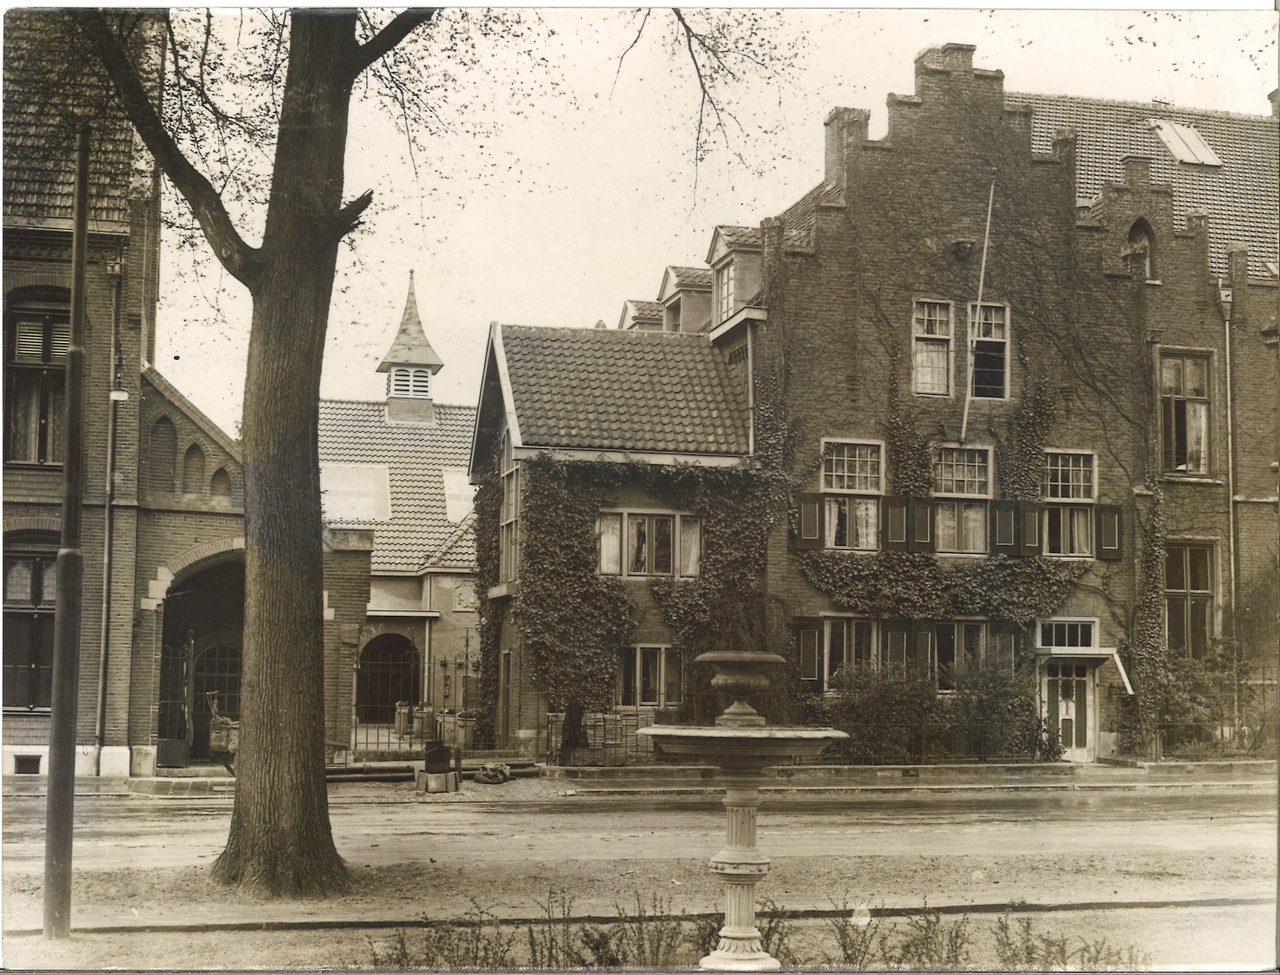 Map met foto's en ansichtkaarten gerelateerd aan het Cuypershuis te Roermond: foto 6693k